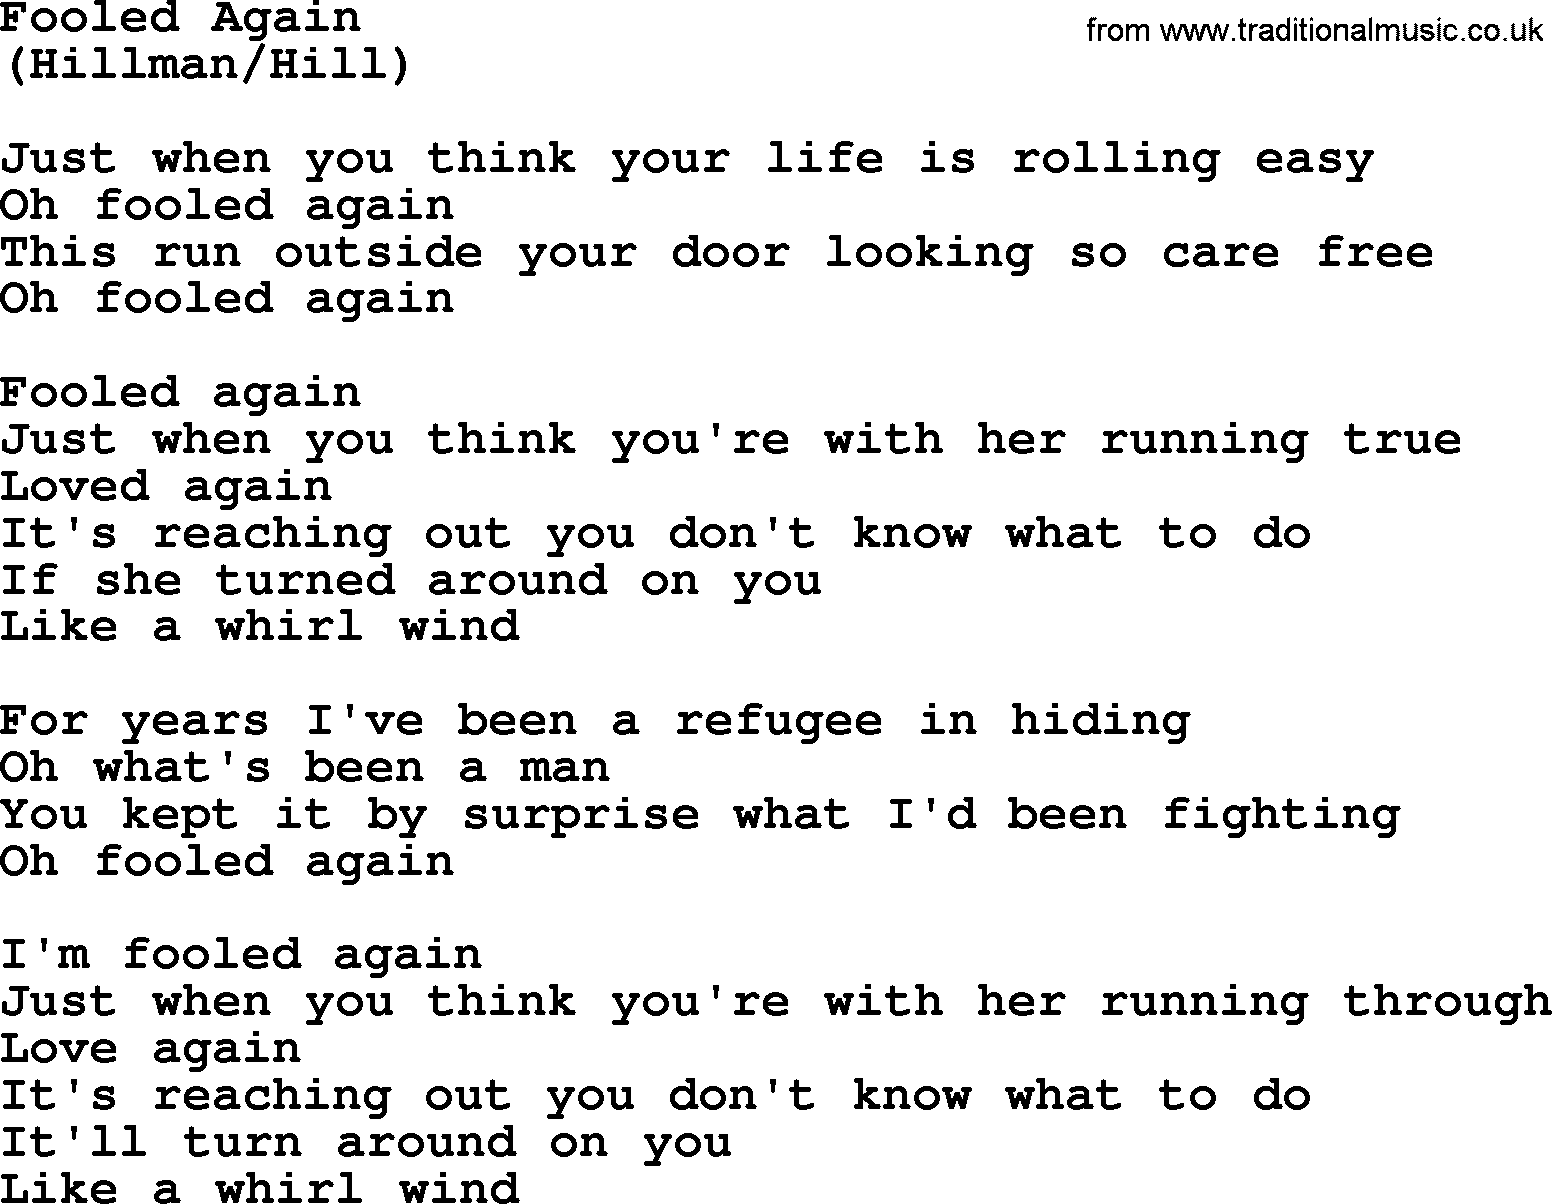 The Byrds song Fooled Again, lyrics